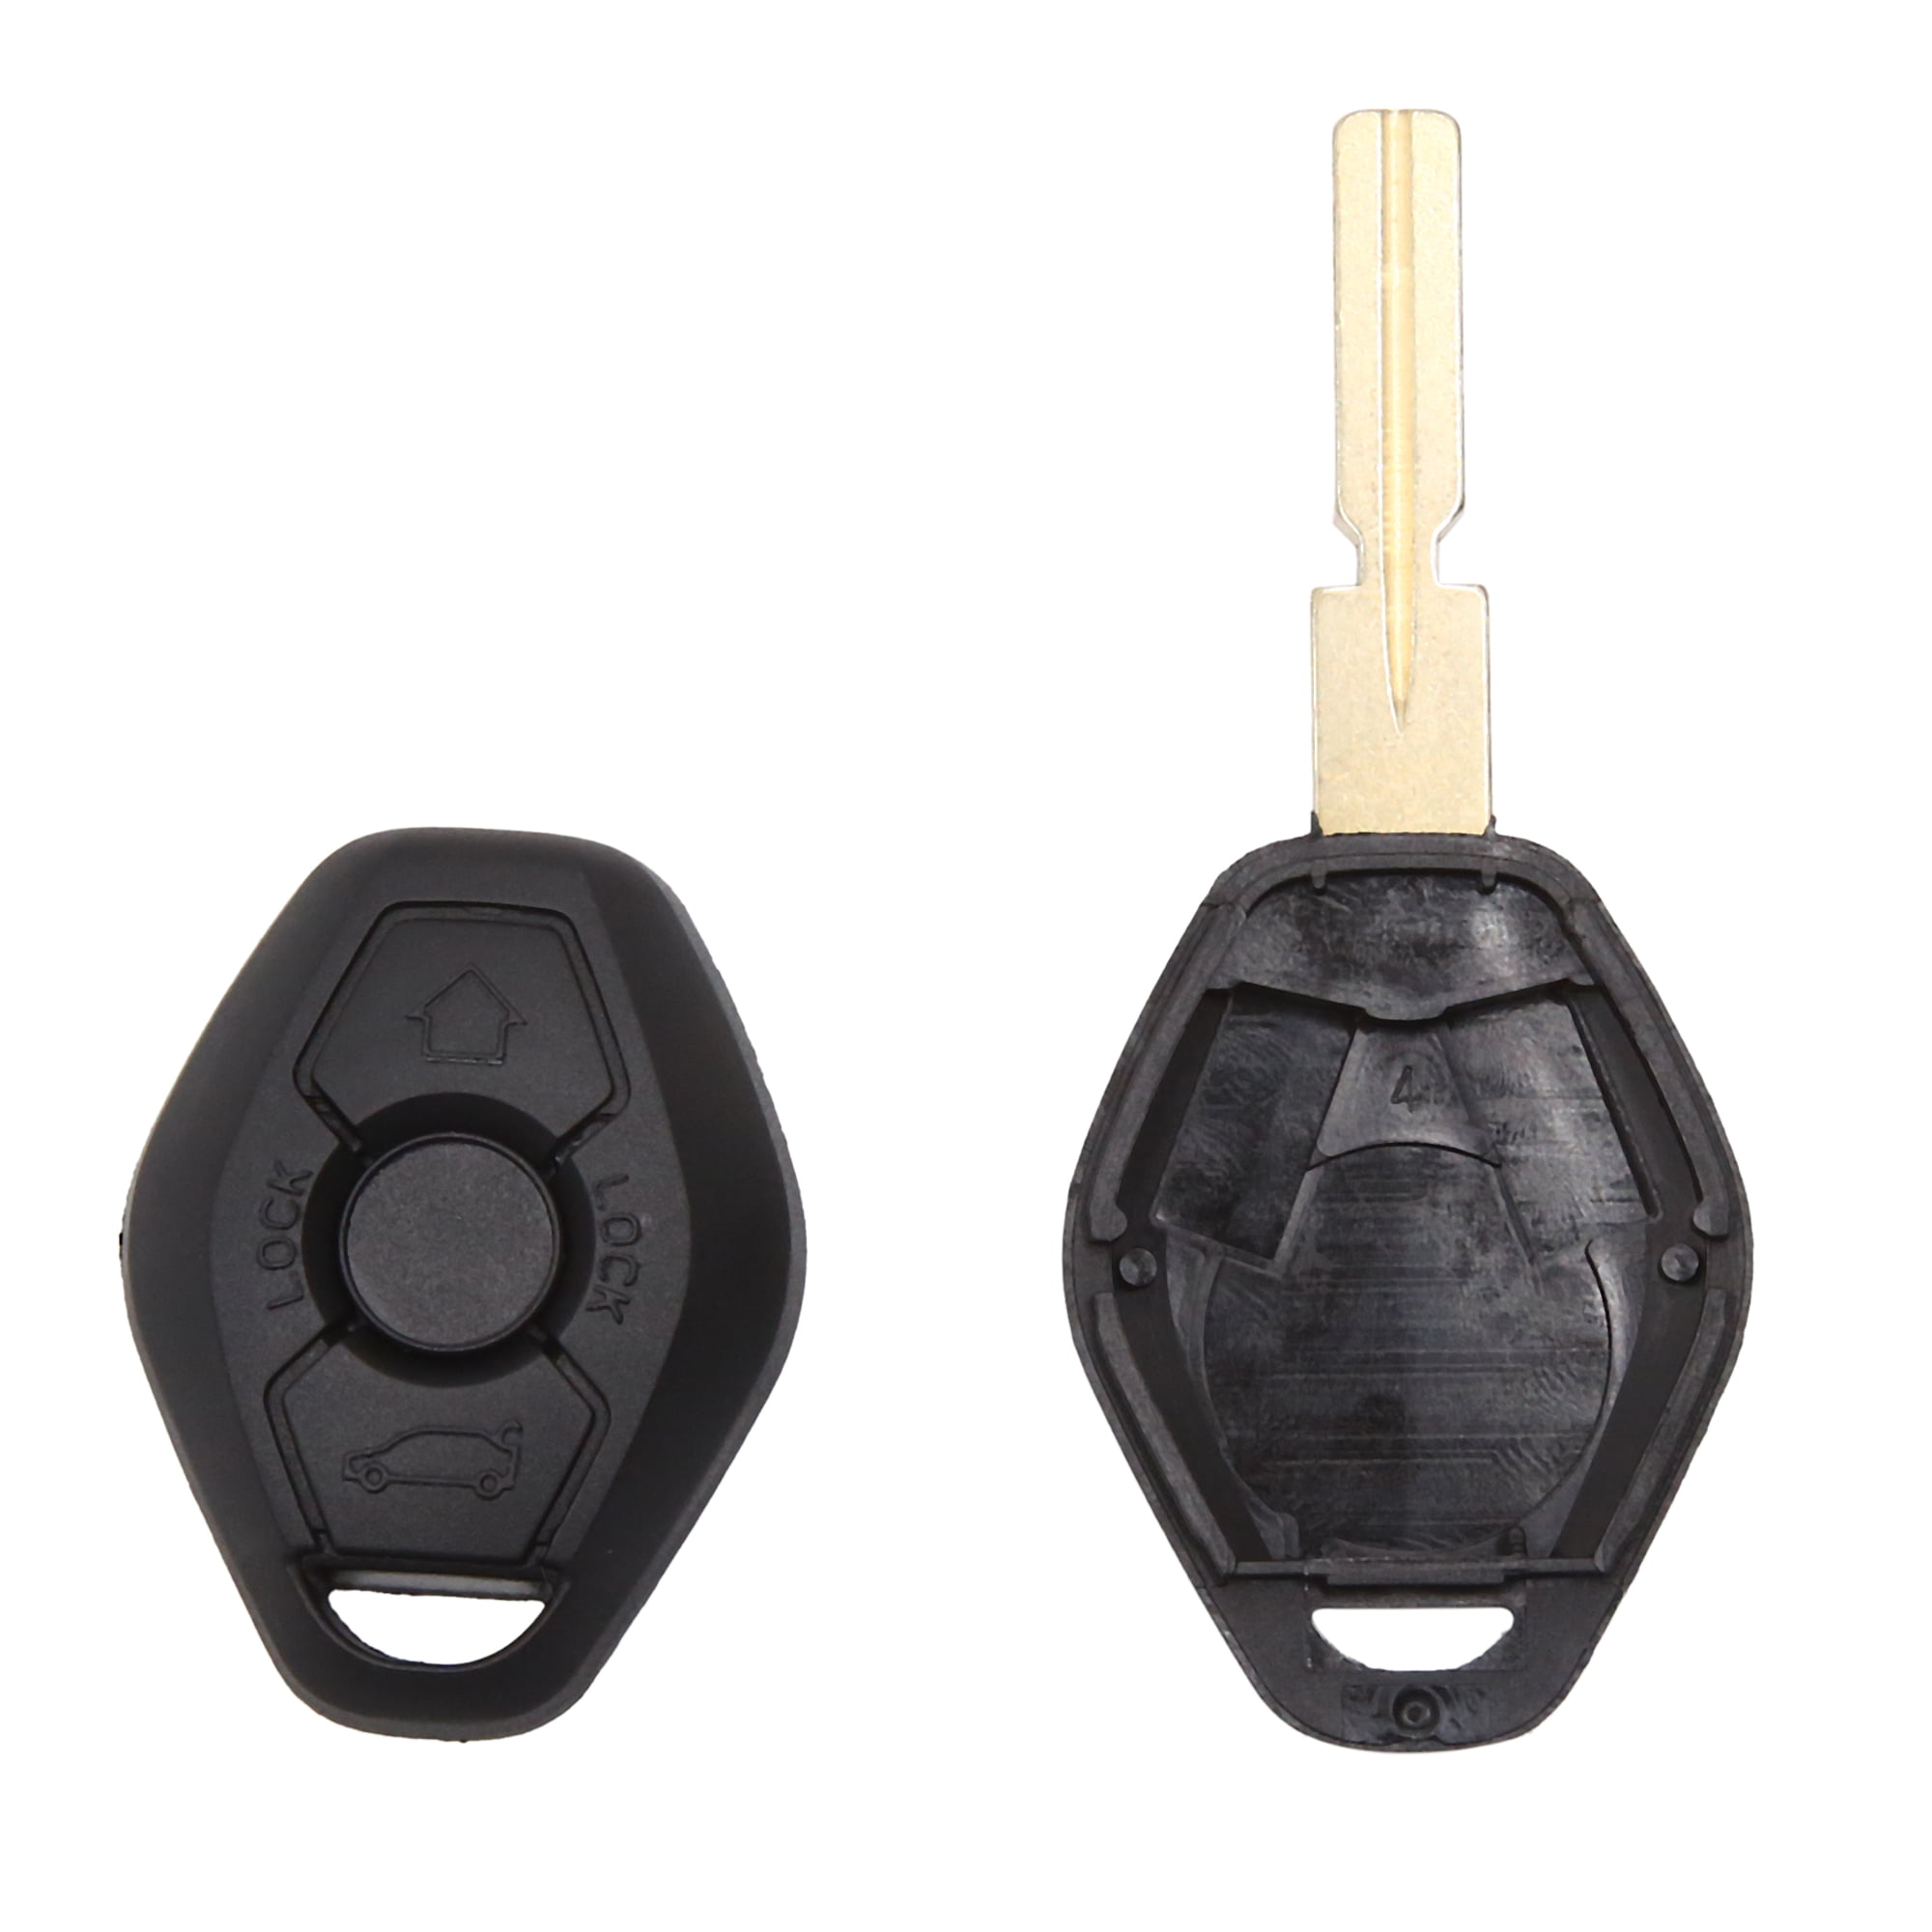 2 Entry Remote Key Fob Shell Case 3 Buttons Bmw E46 Z3 E39 E36 E38 M5 M3